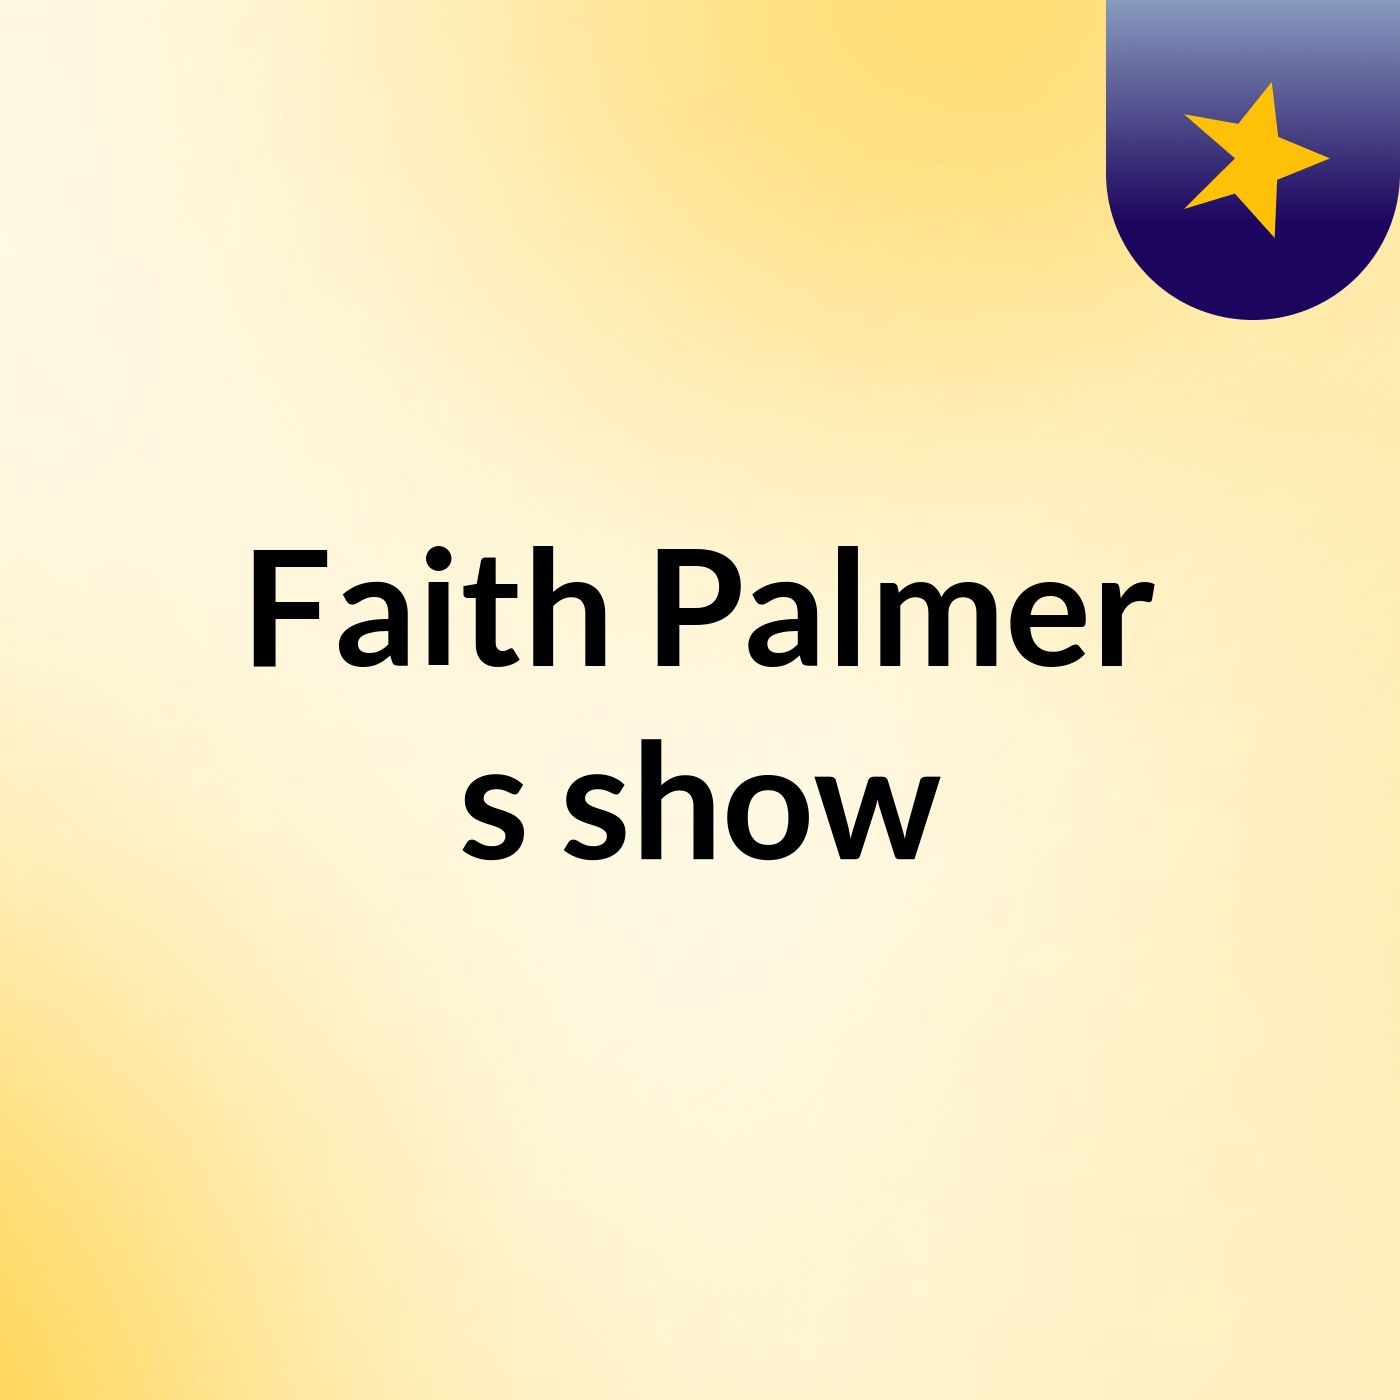 Faith Palmer's show